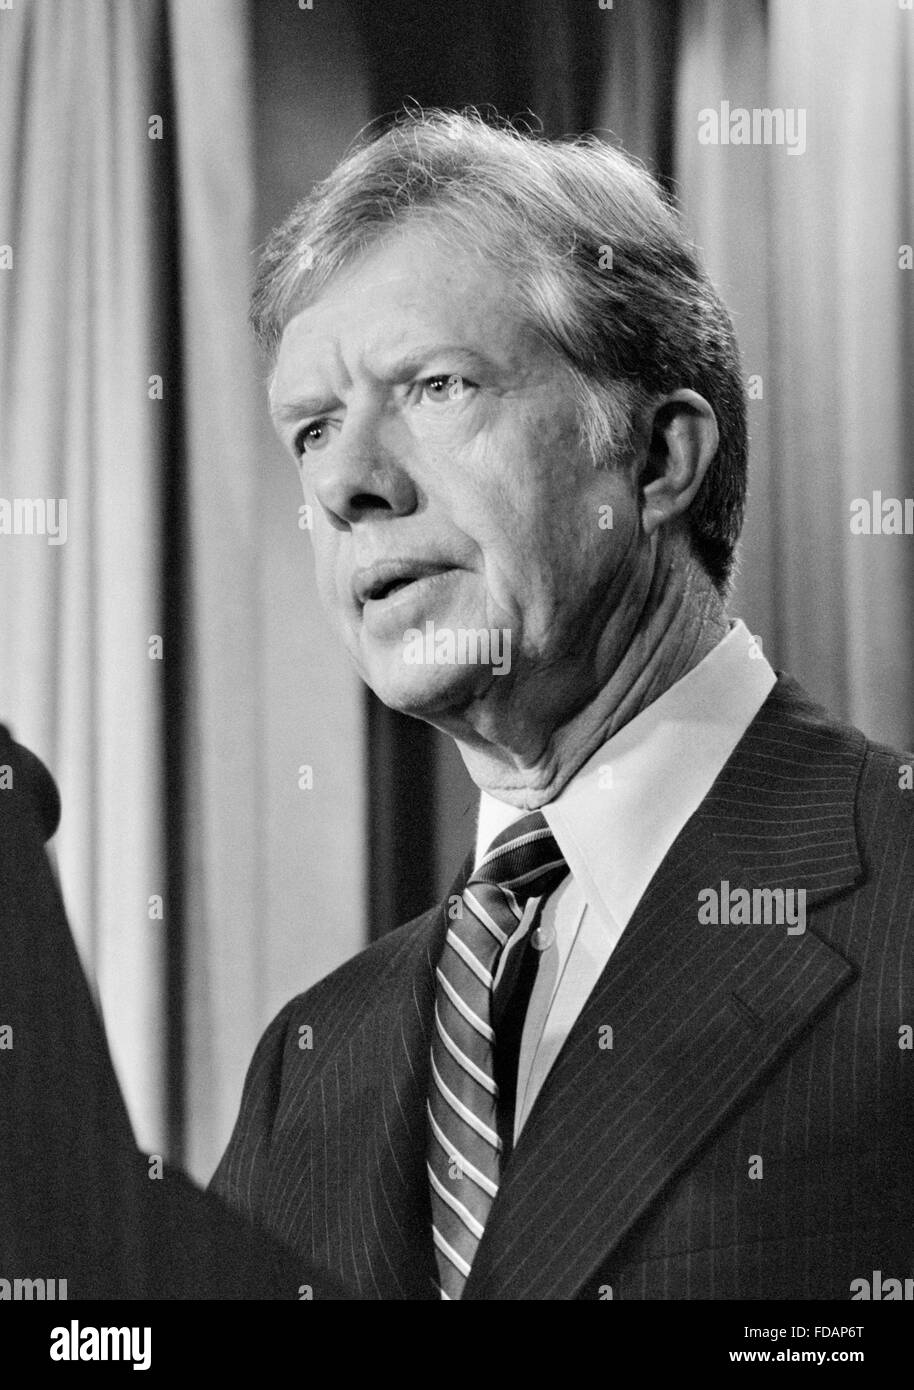 Jimmy Carter, 39e Président des Etats-Unis, s'adressant à la presse en avril 1980 Banque D'Images